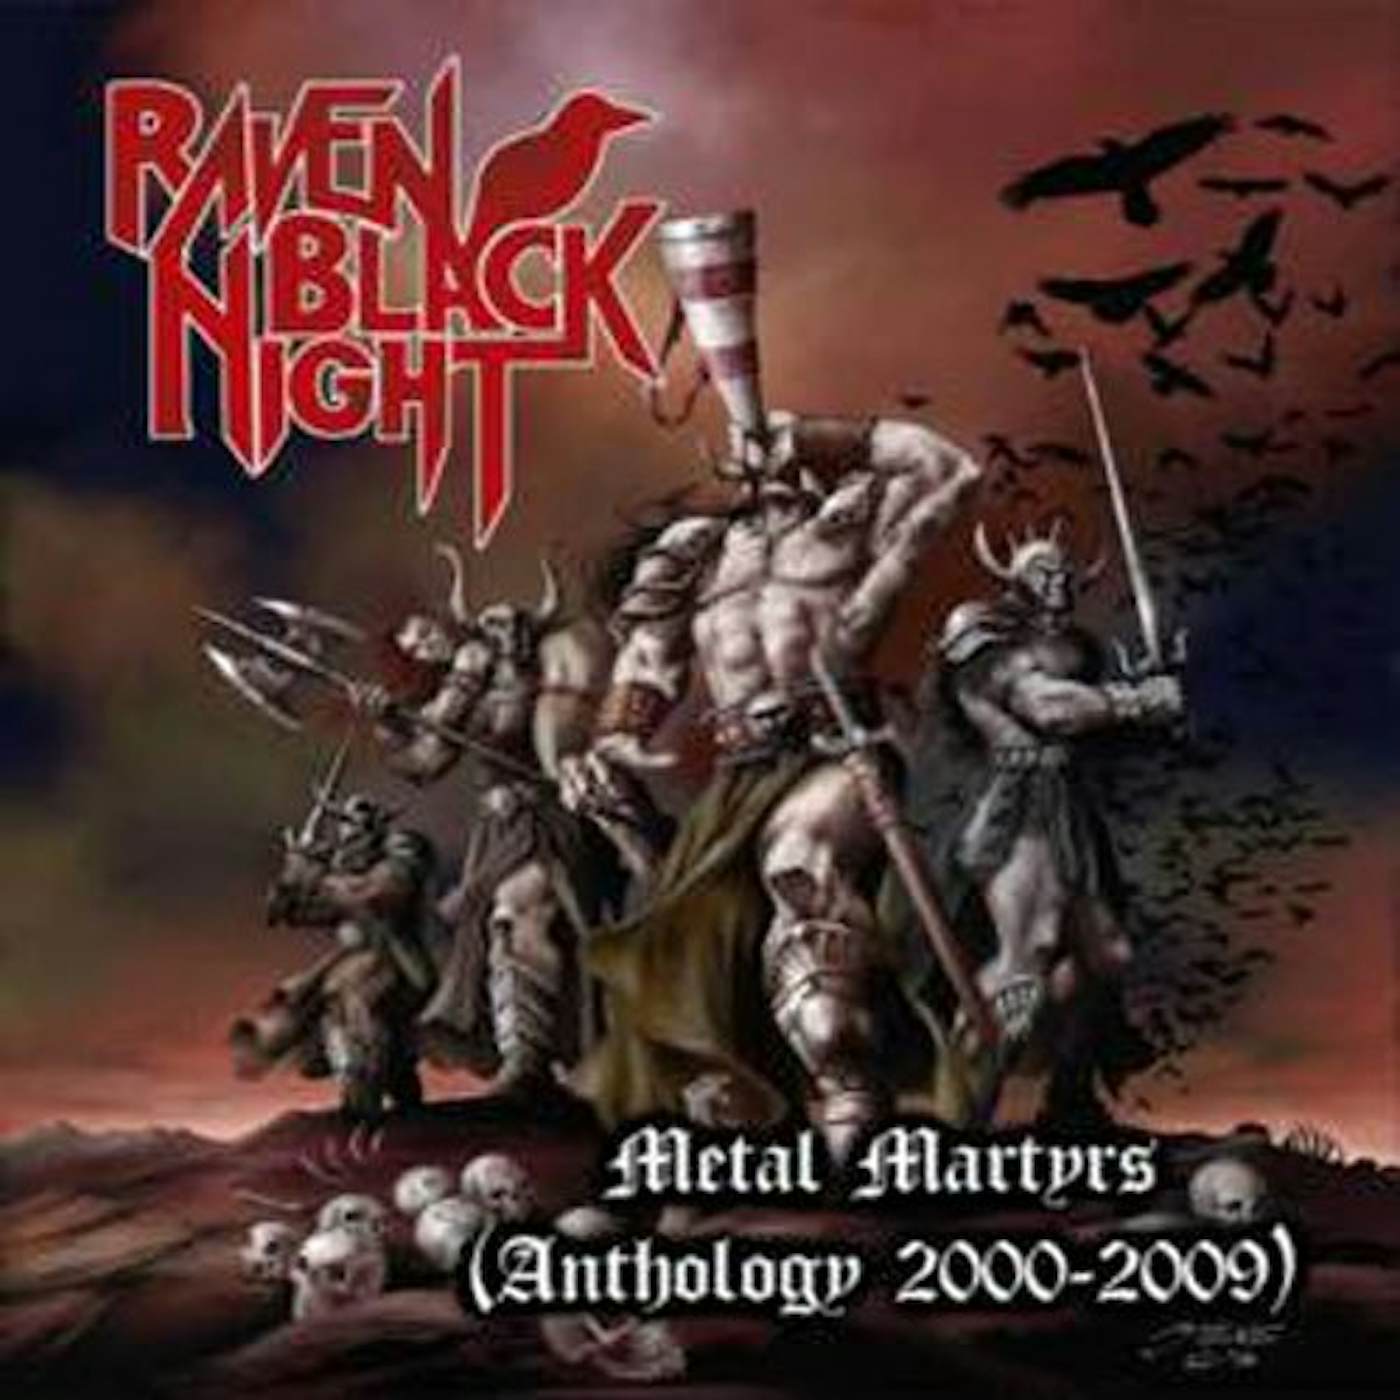 Raven Black Night METAL MARTYRS: ANTHOLOGY 2000-2009 CD